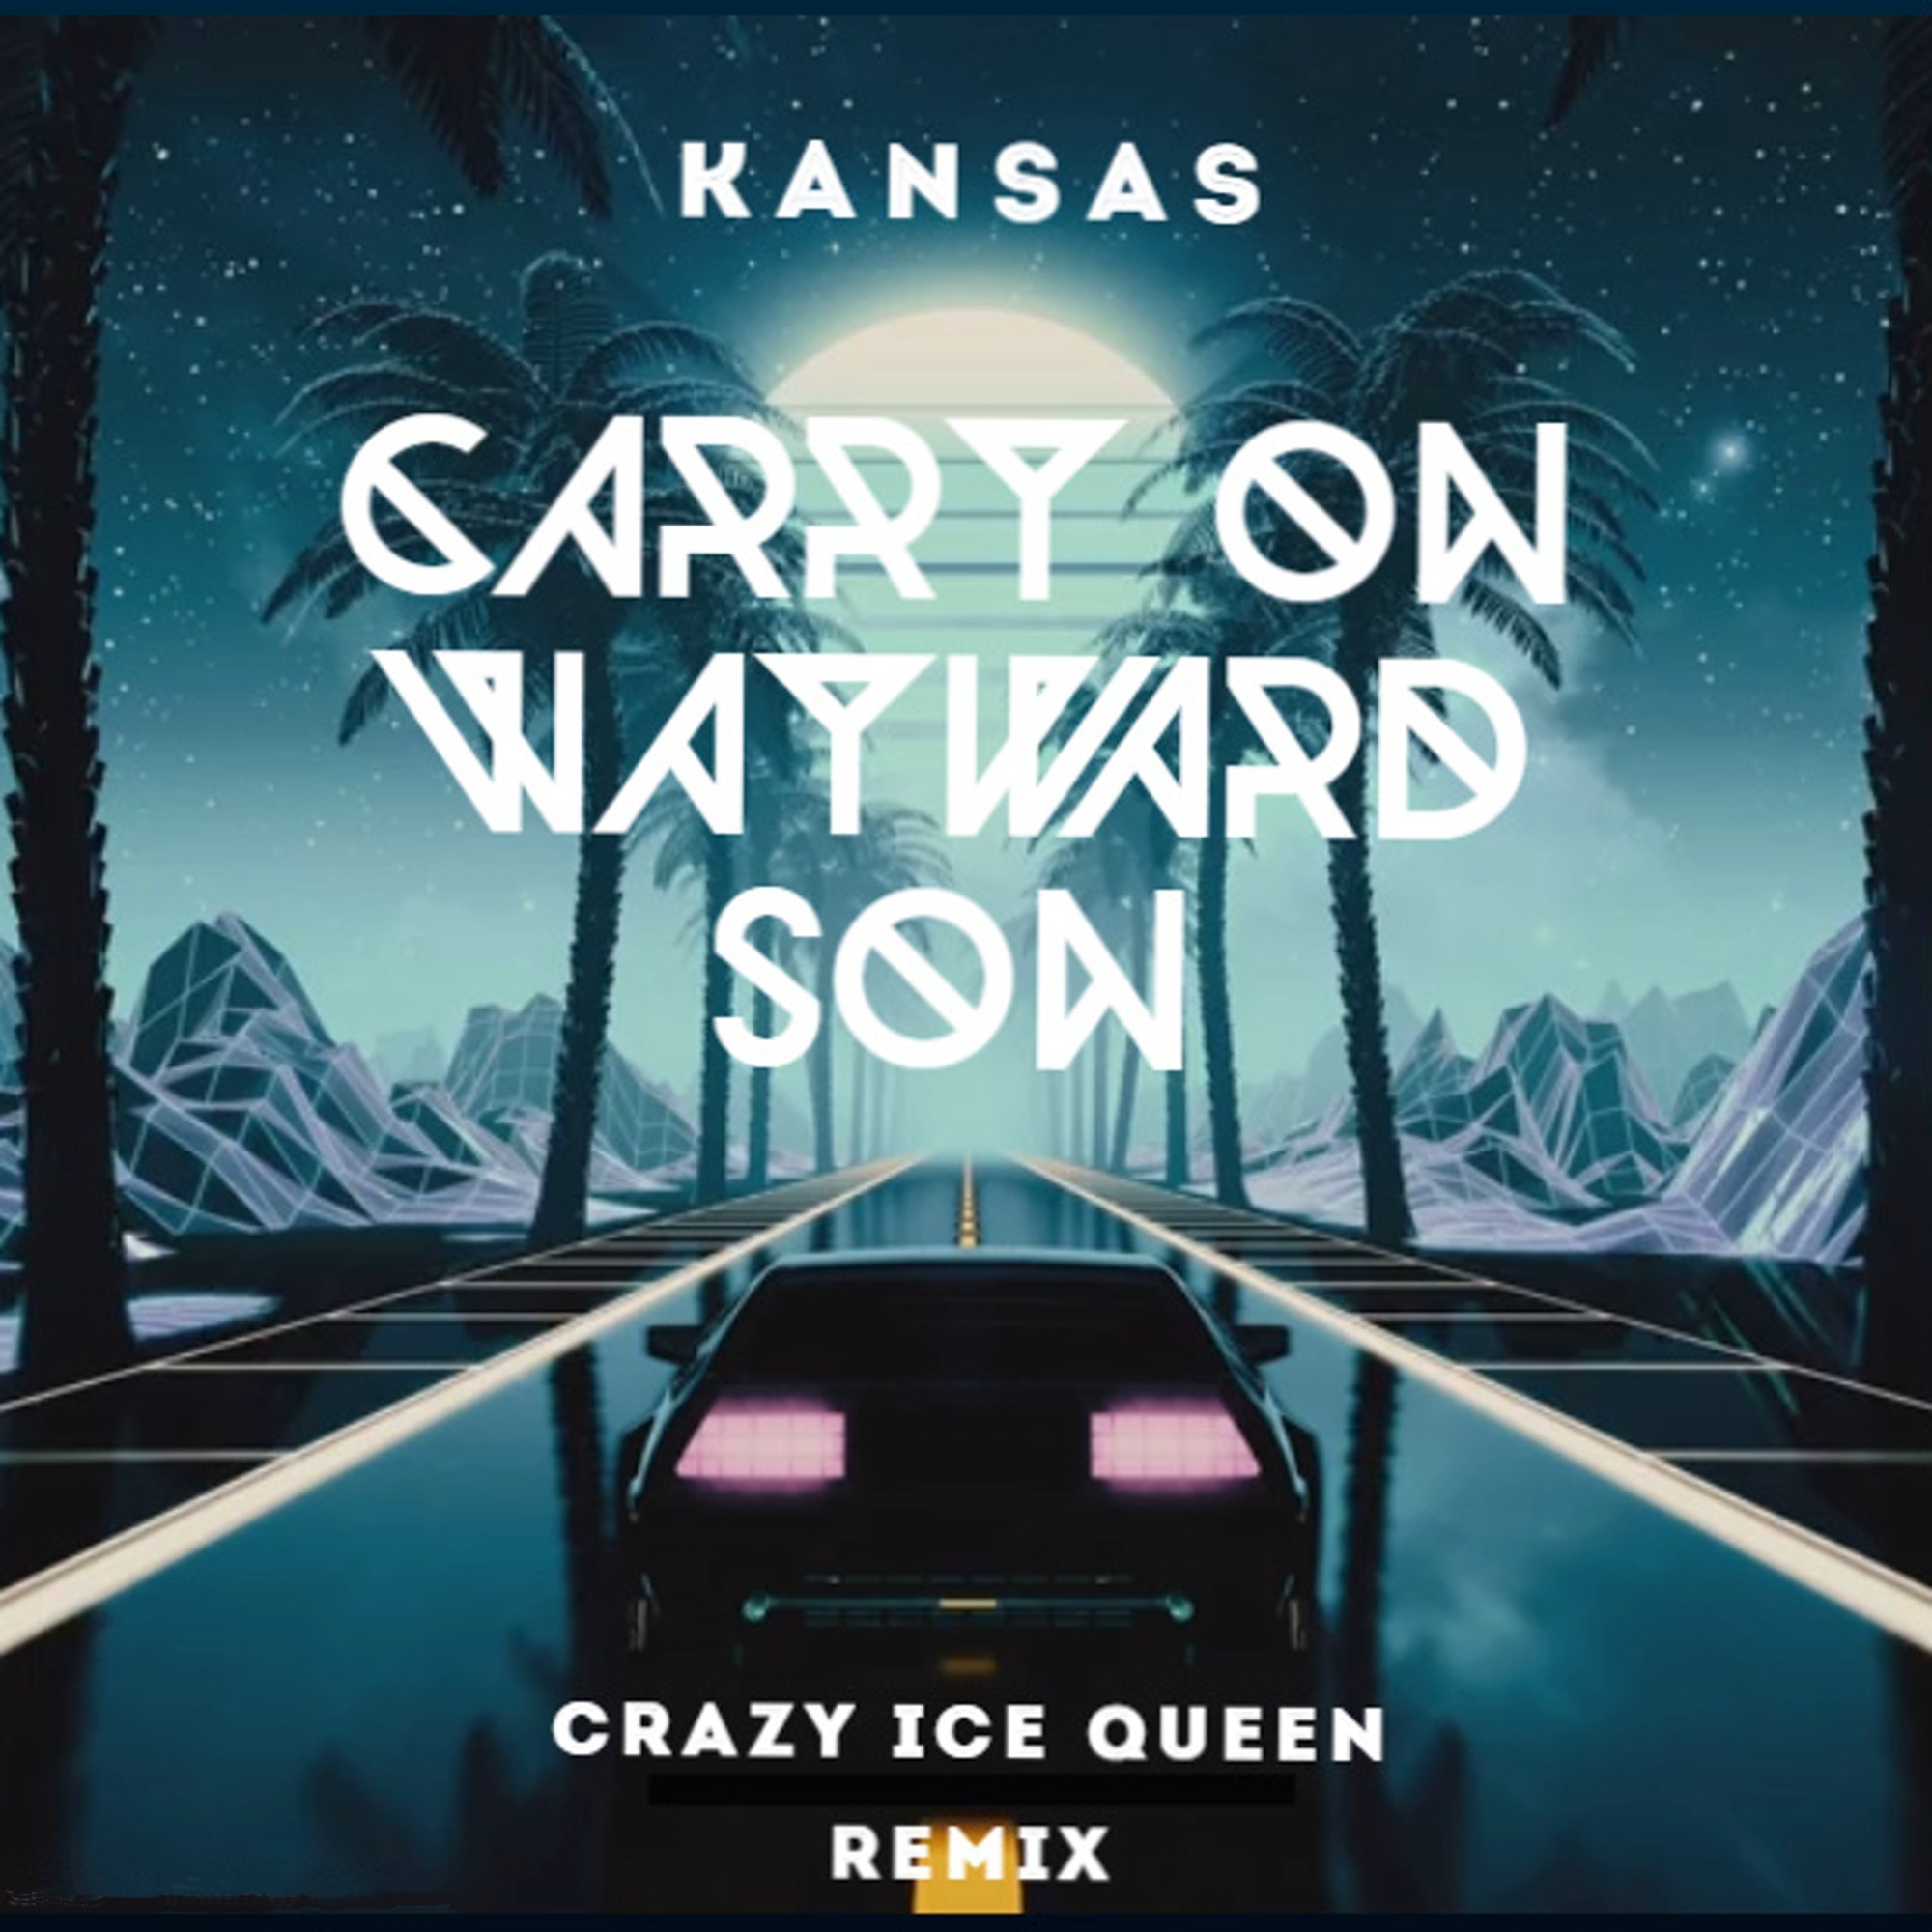 Kansas carry on wayward son